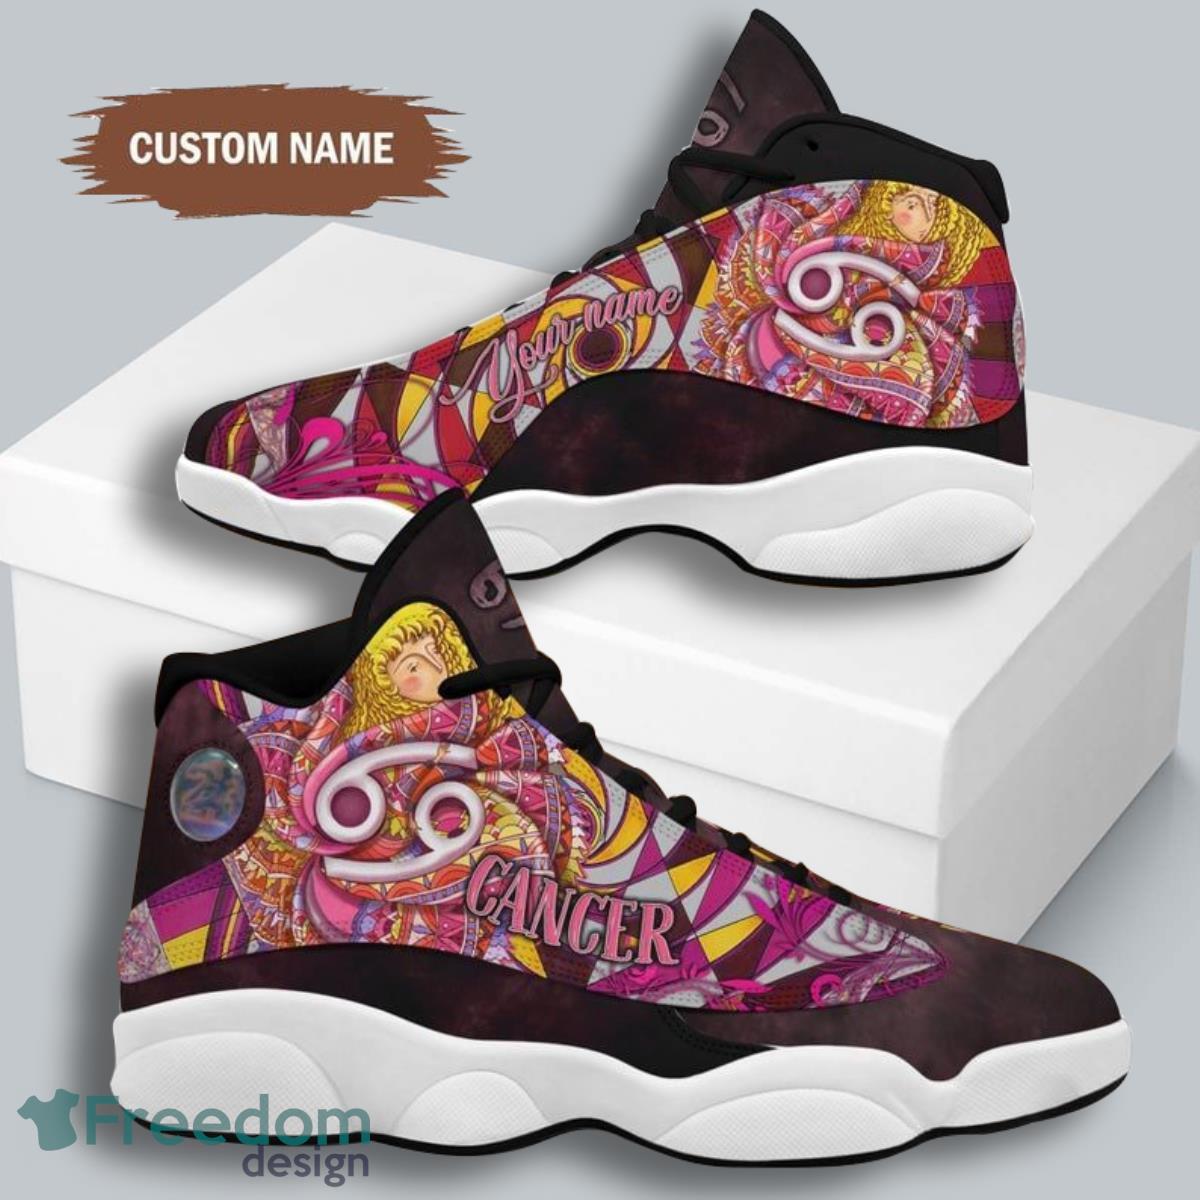 🤞🤞🤞 Cancer Custom Jordan's. Anyone have them.? 🤞🤞🤞 : r